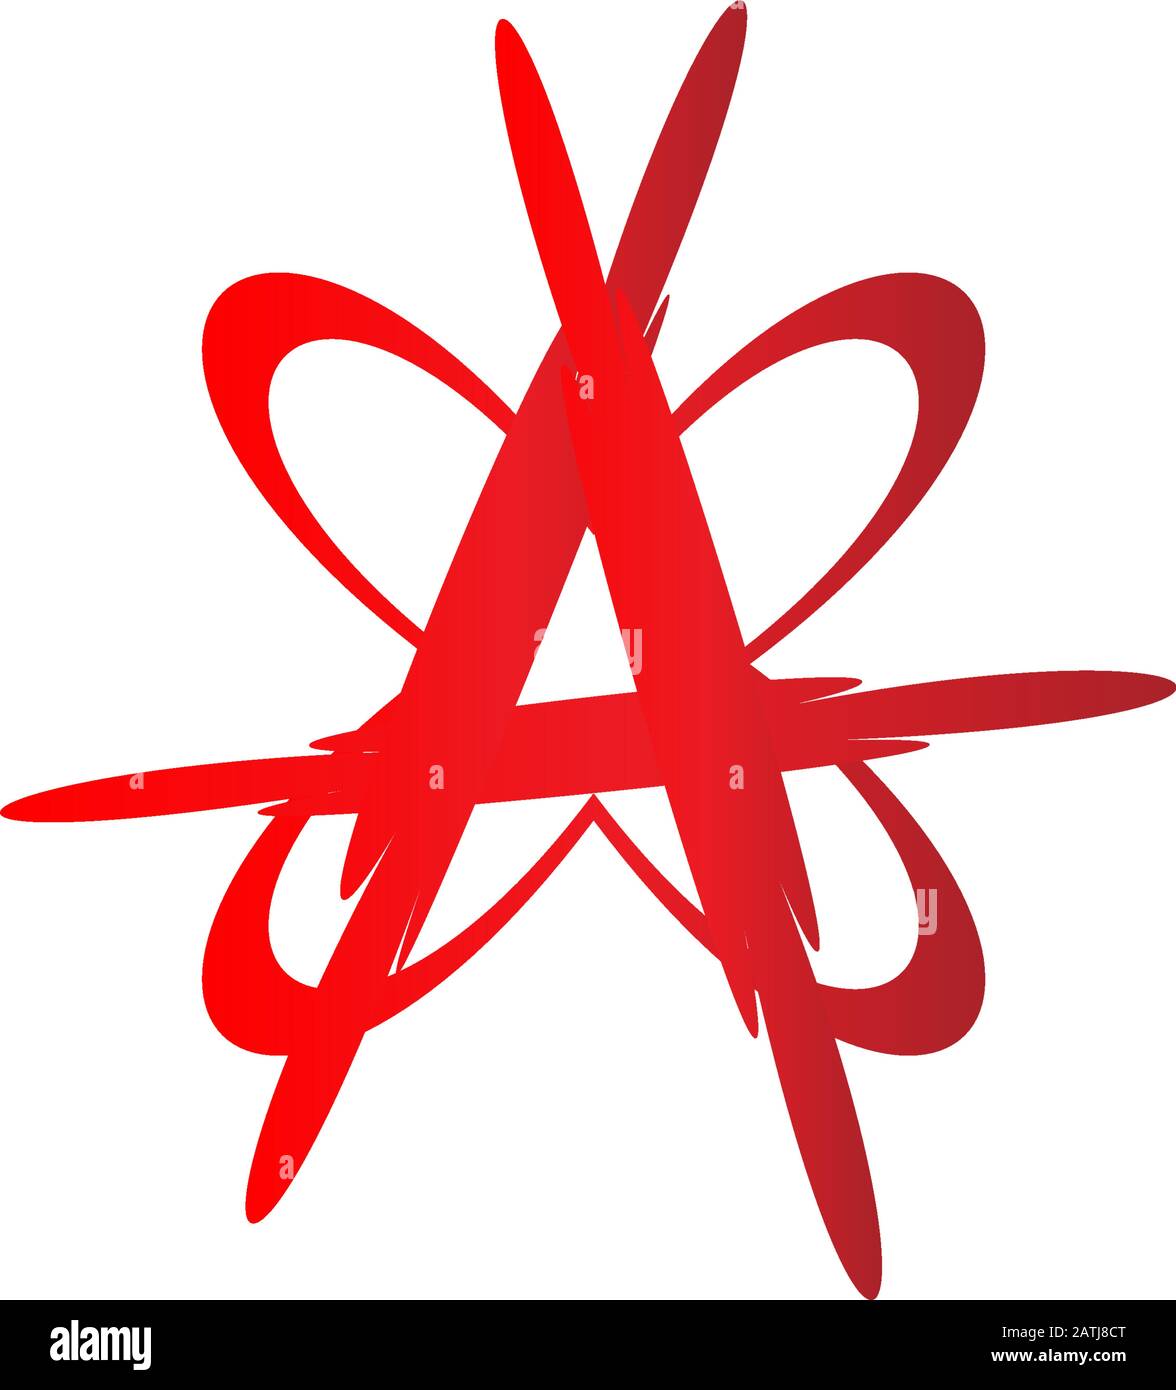 Simbolo di anarchia con forma a farfalla, lettera A modello di disegno con logo alfabetico, colore del sangue, file vettoriale EPS 10 Illustrazione Vettoriale